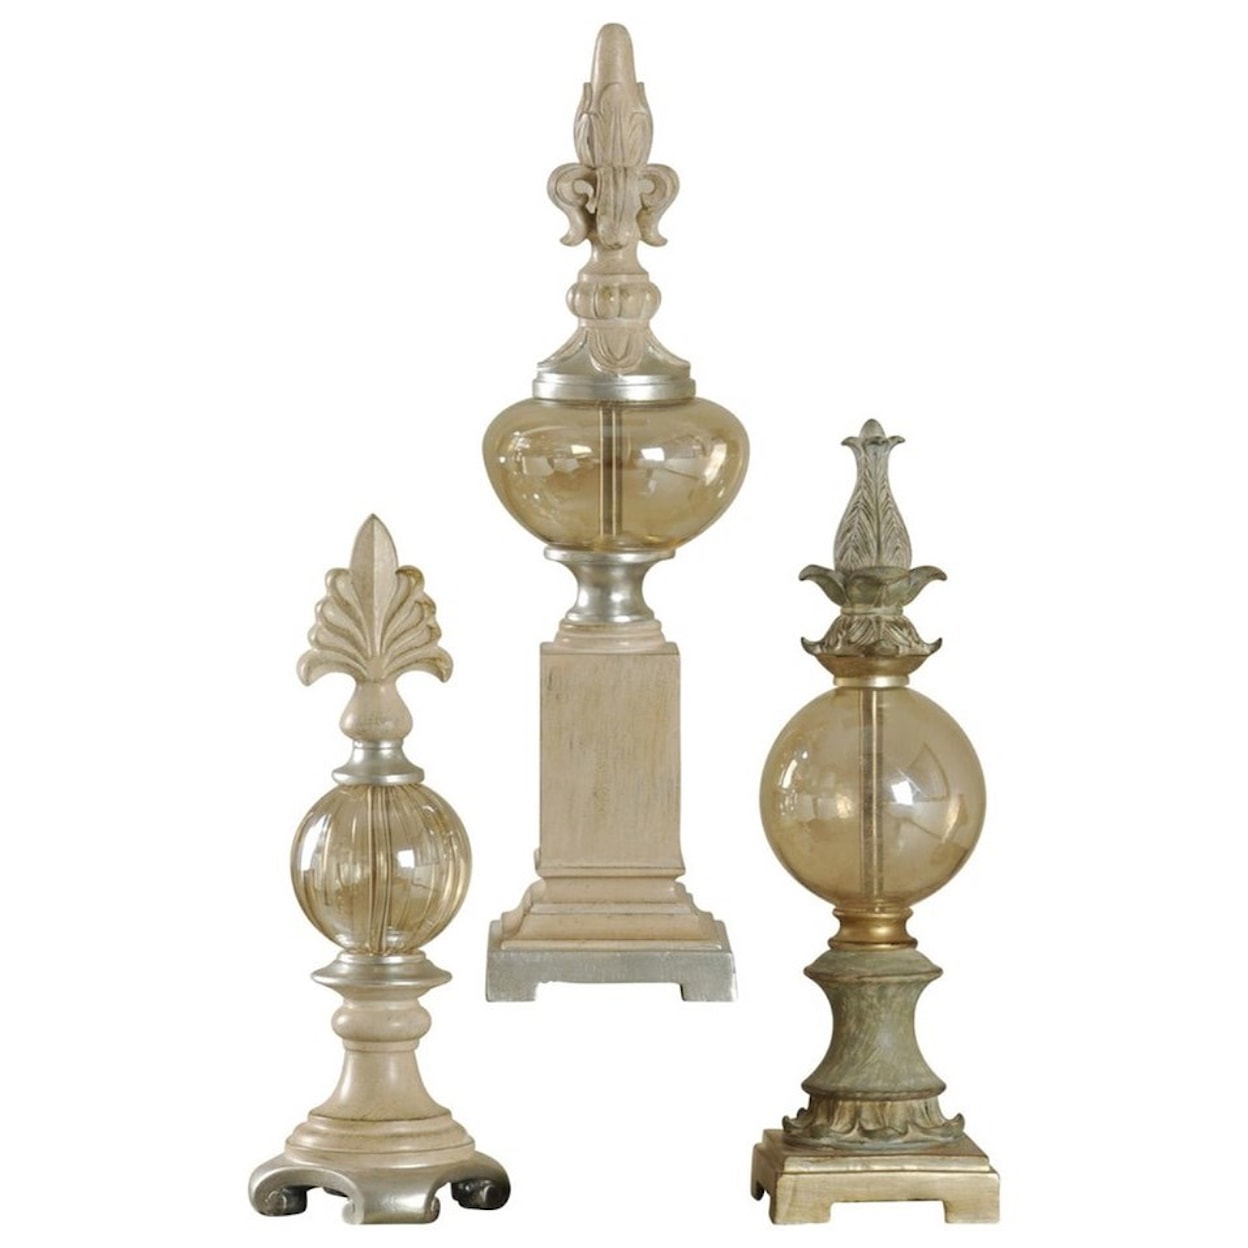 StyleCraft Accessories Set of 3 Decorative Finials